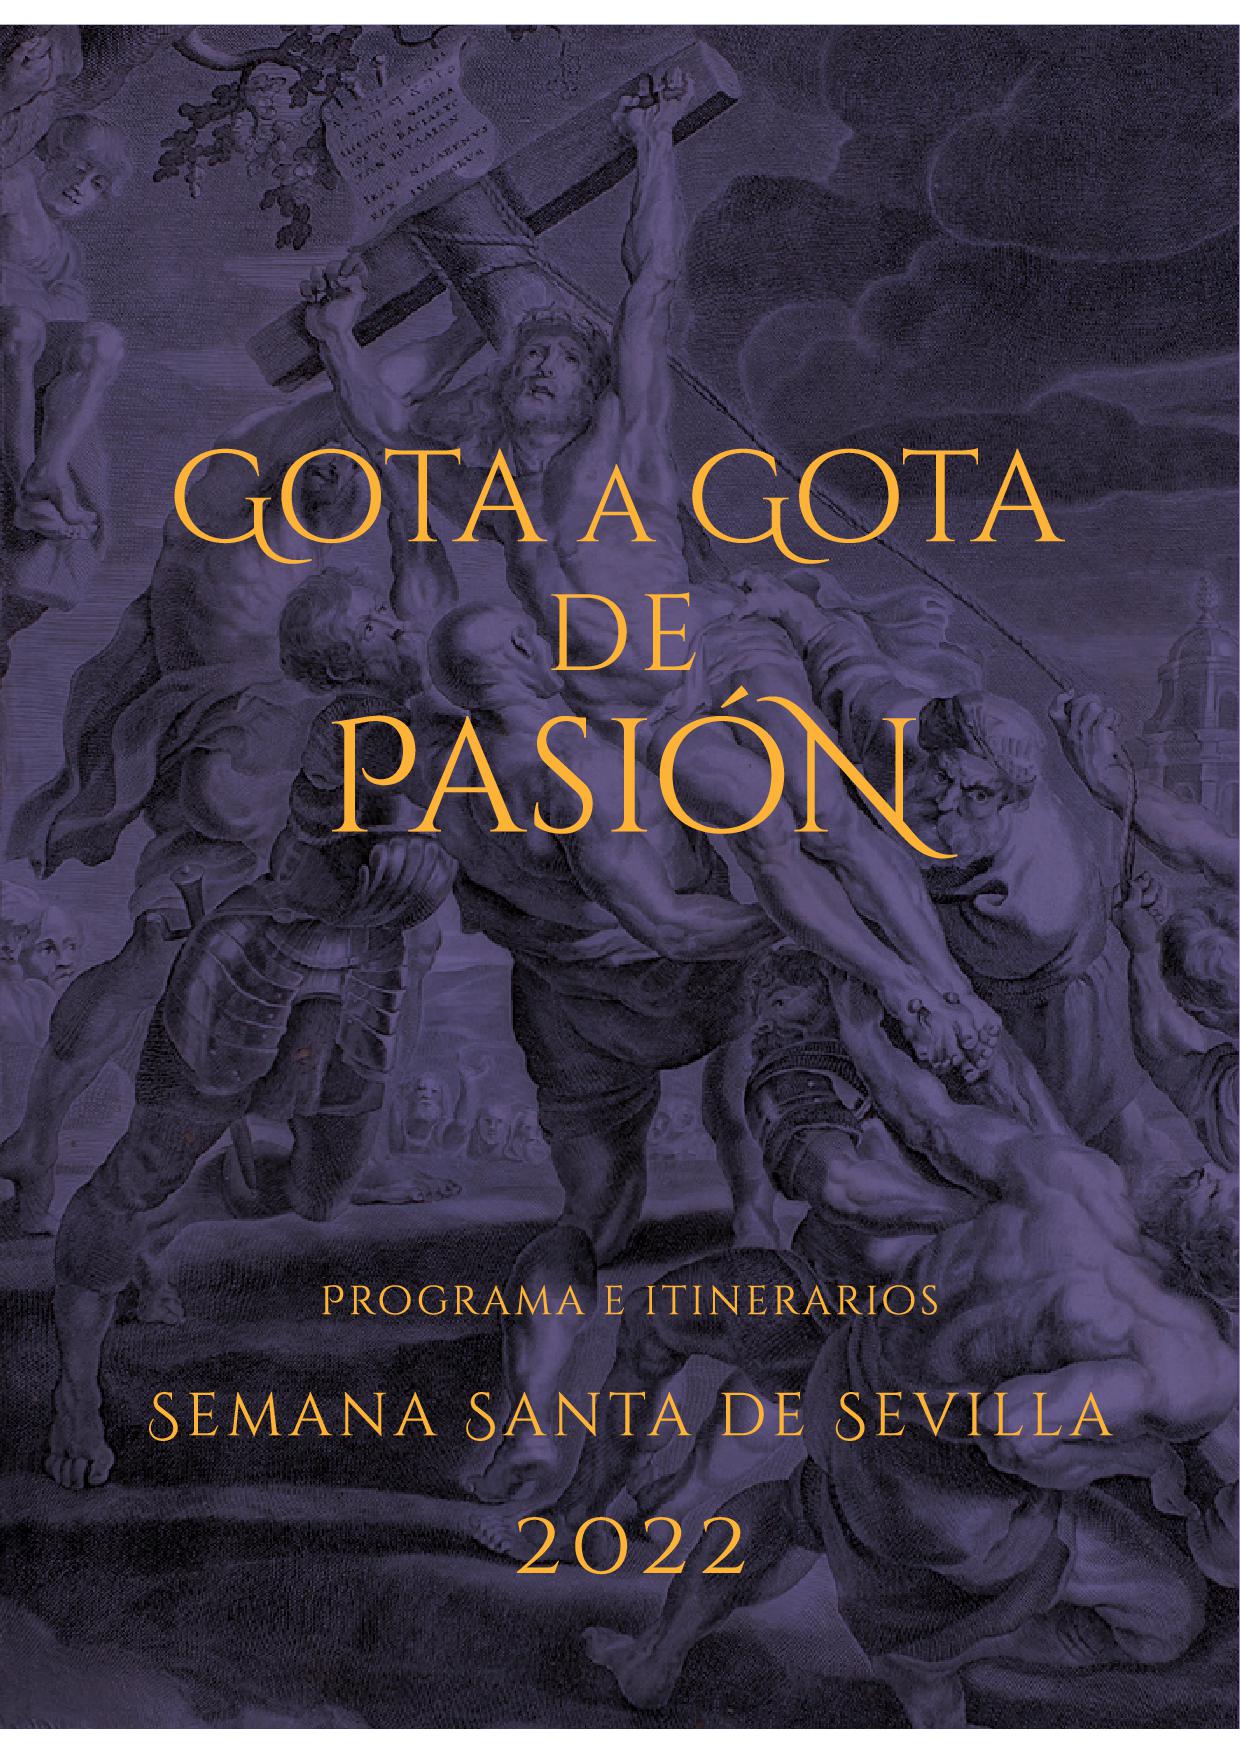 Programa de Mano "Gota a Gota". Semana Santa de Sevilla 2022